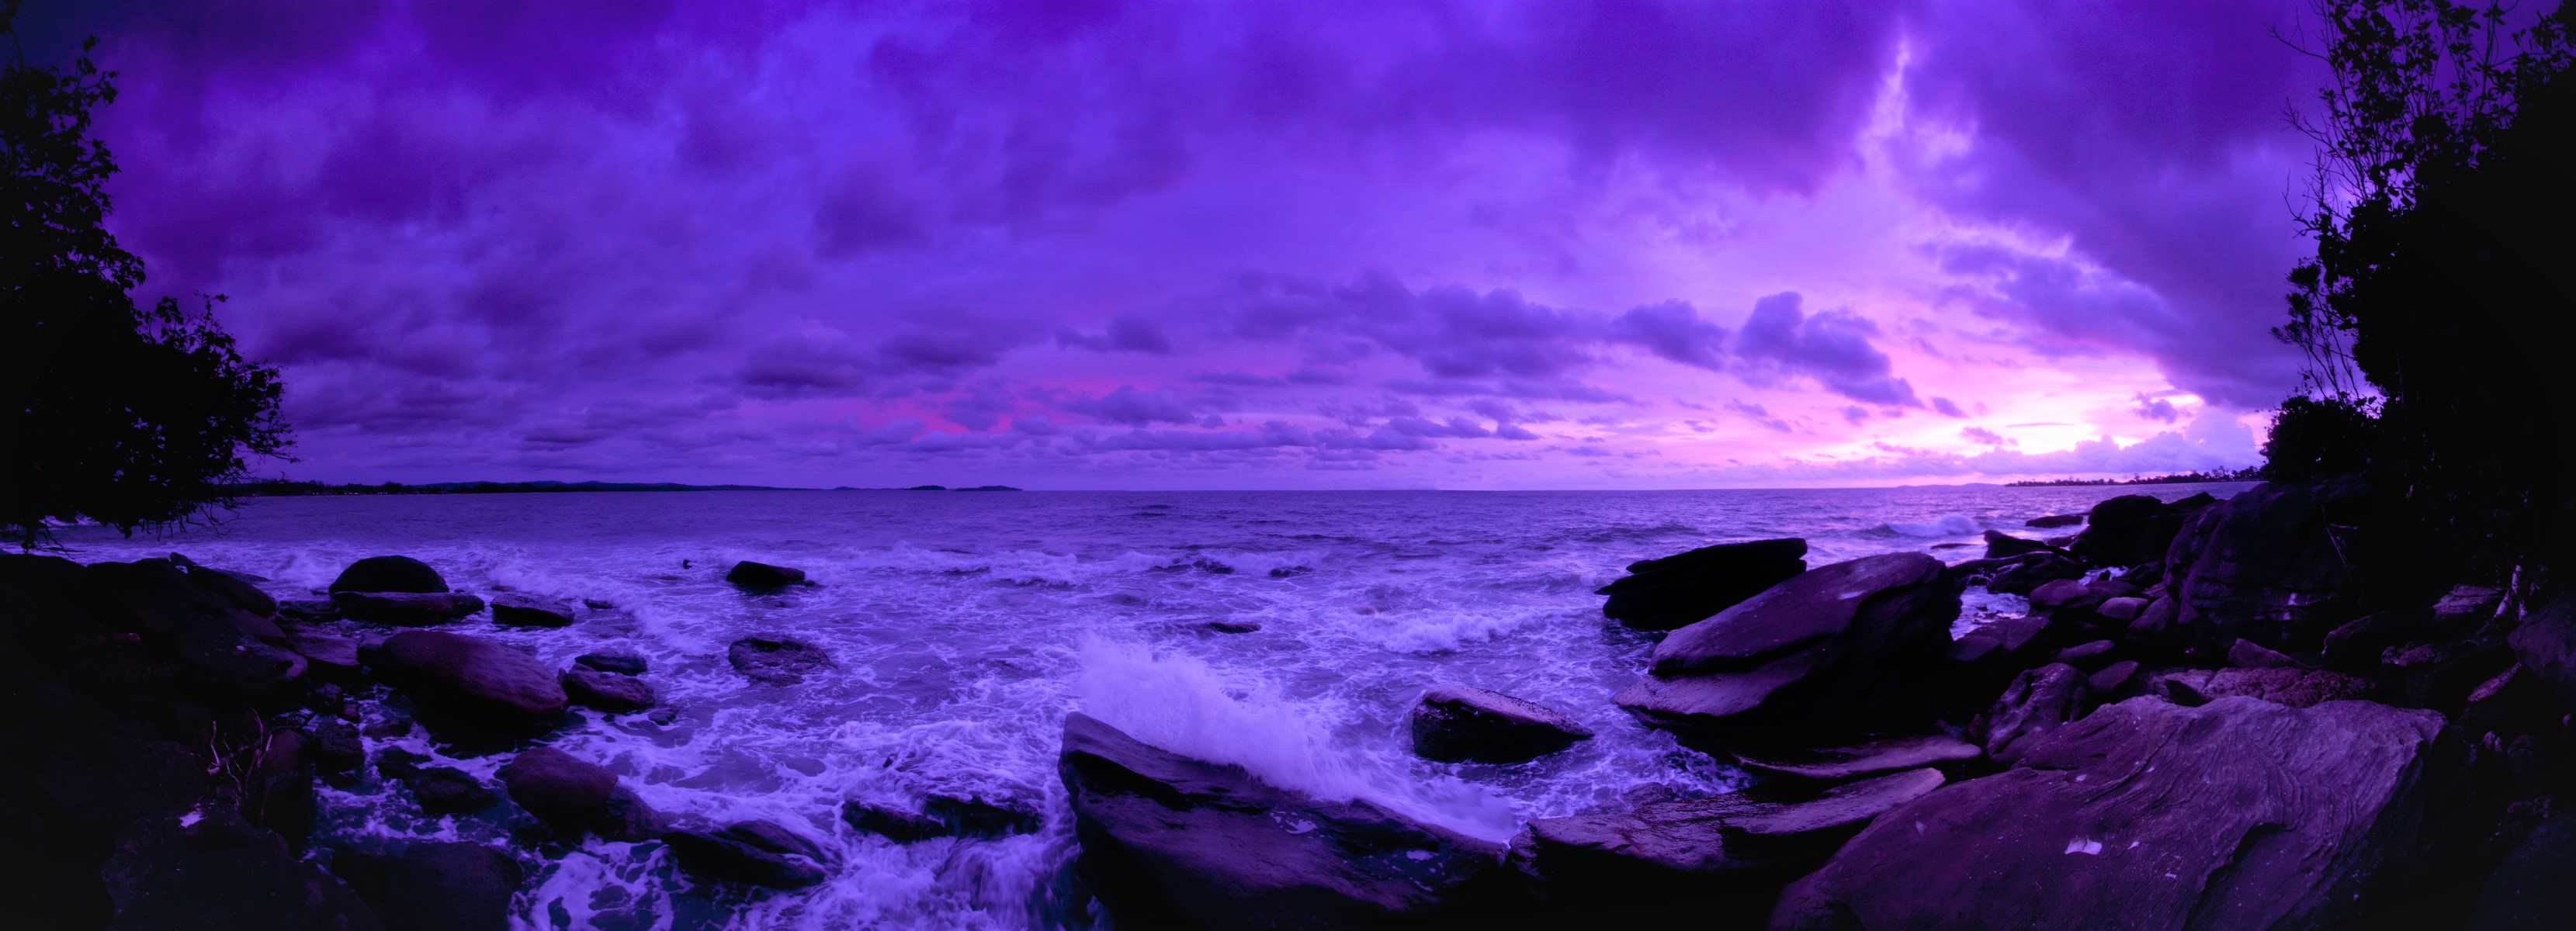 Скачать обои бесплатно Море, Горизонт, Океан, Пурпурный, Земля/природа, Закат Солнца картинка на рабочий стол ПК